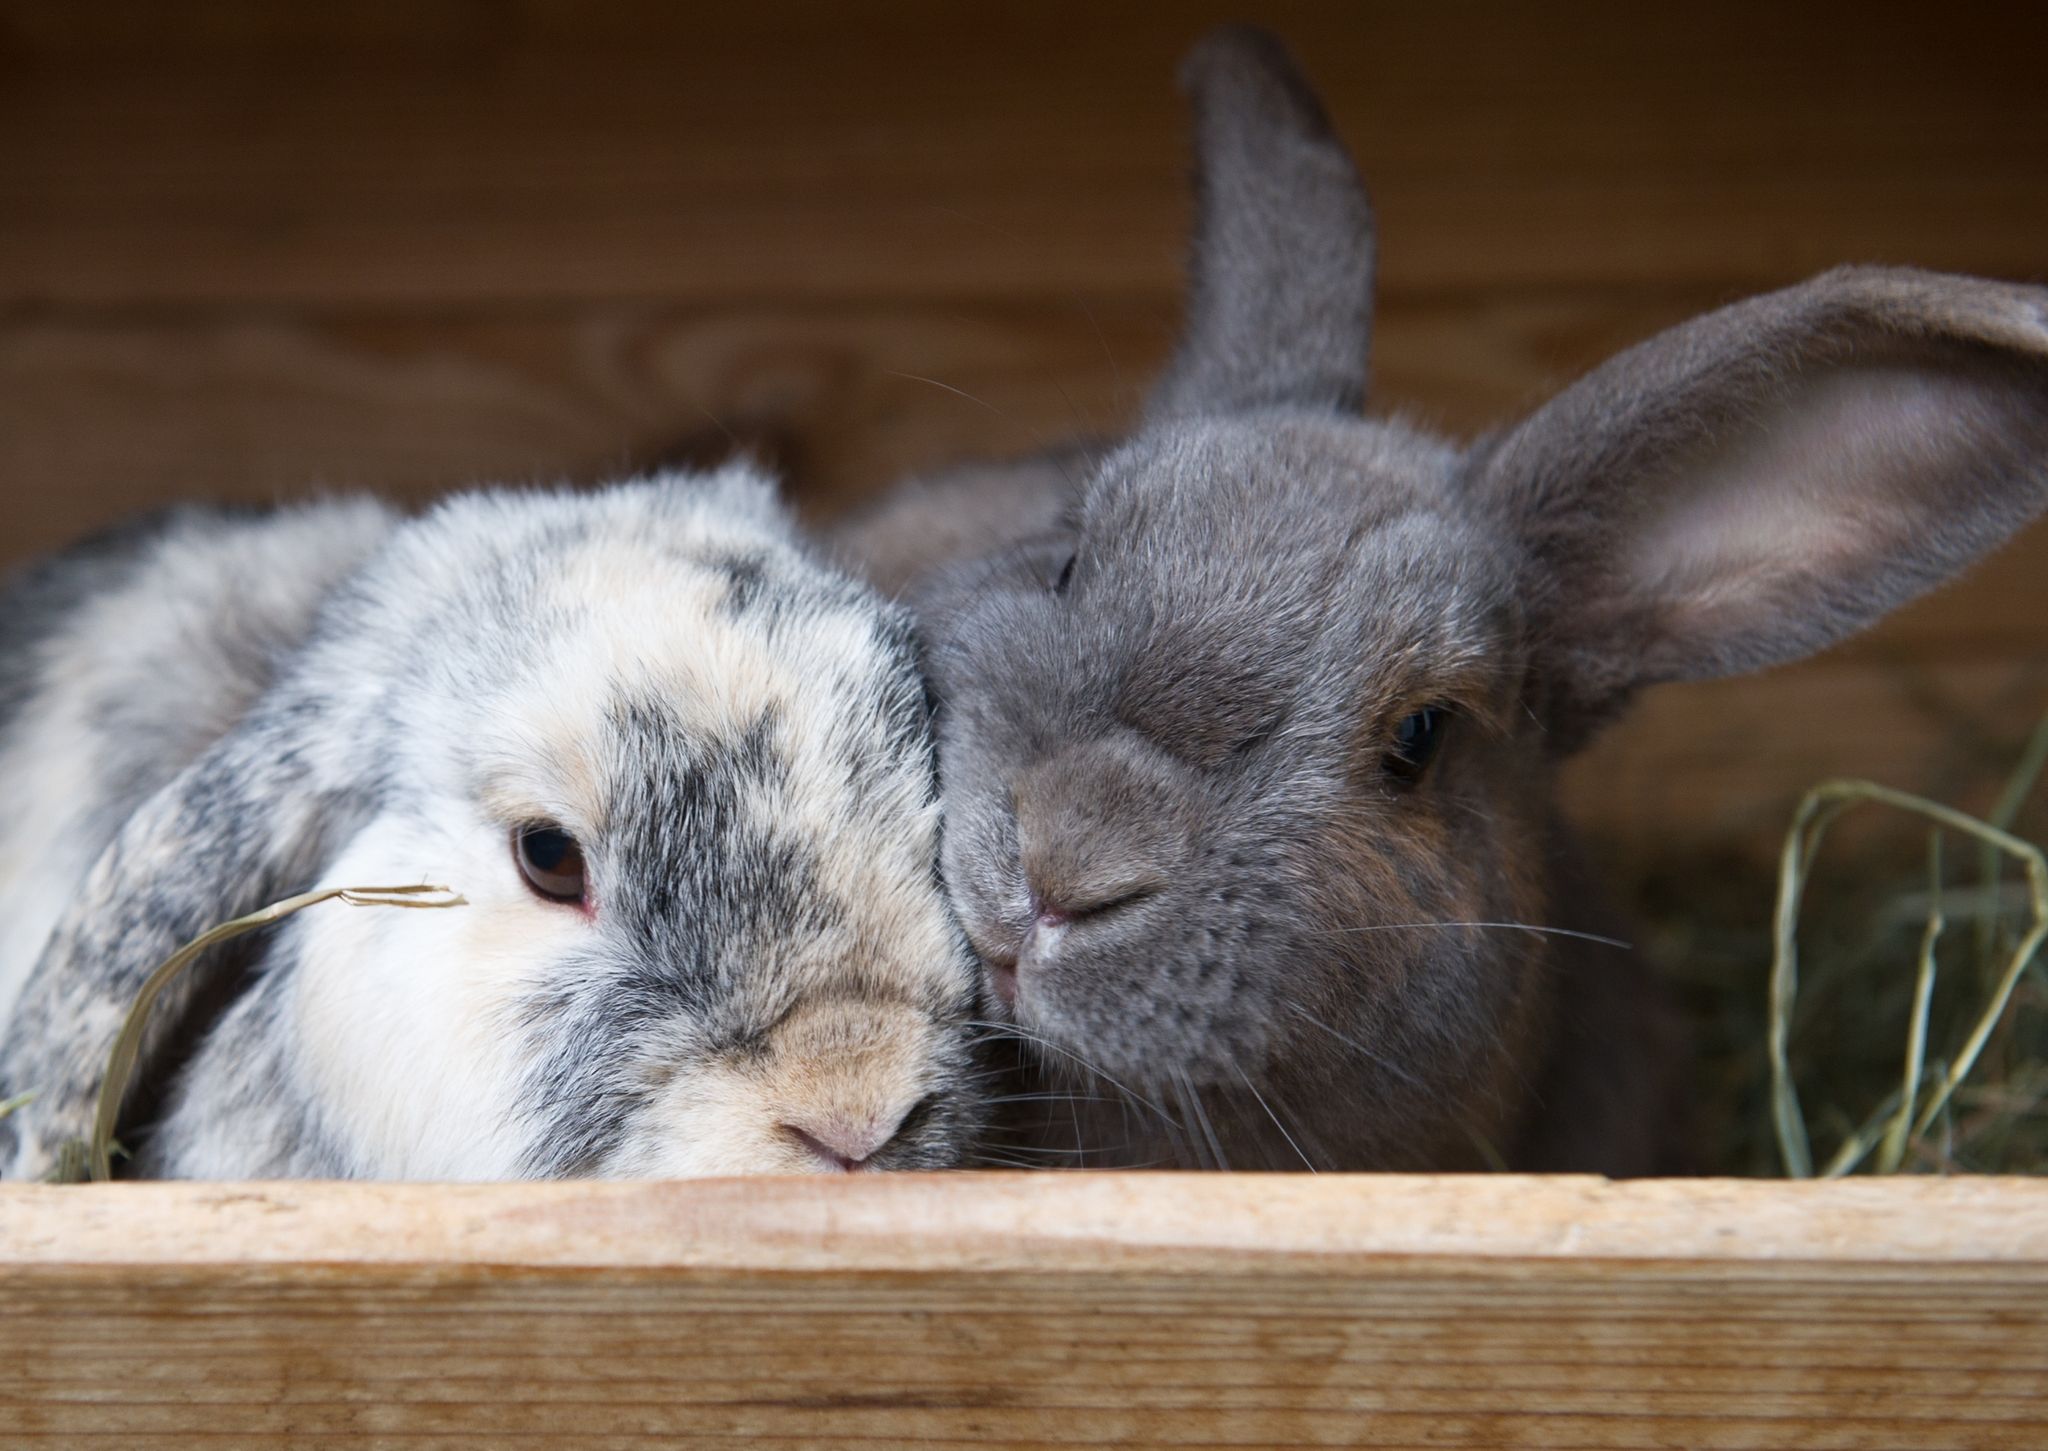 Verstehen sich oft am besten: Kaninchen gleichen Alters.